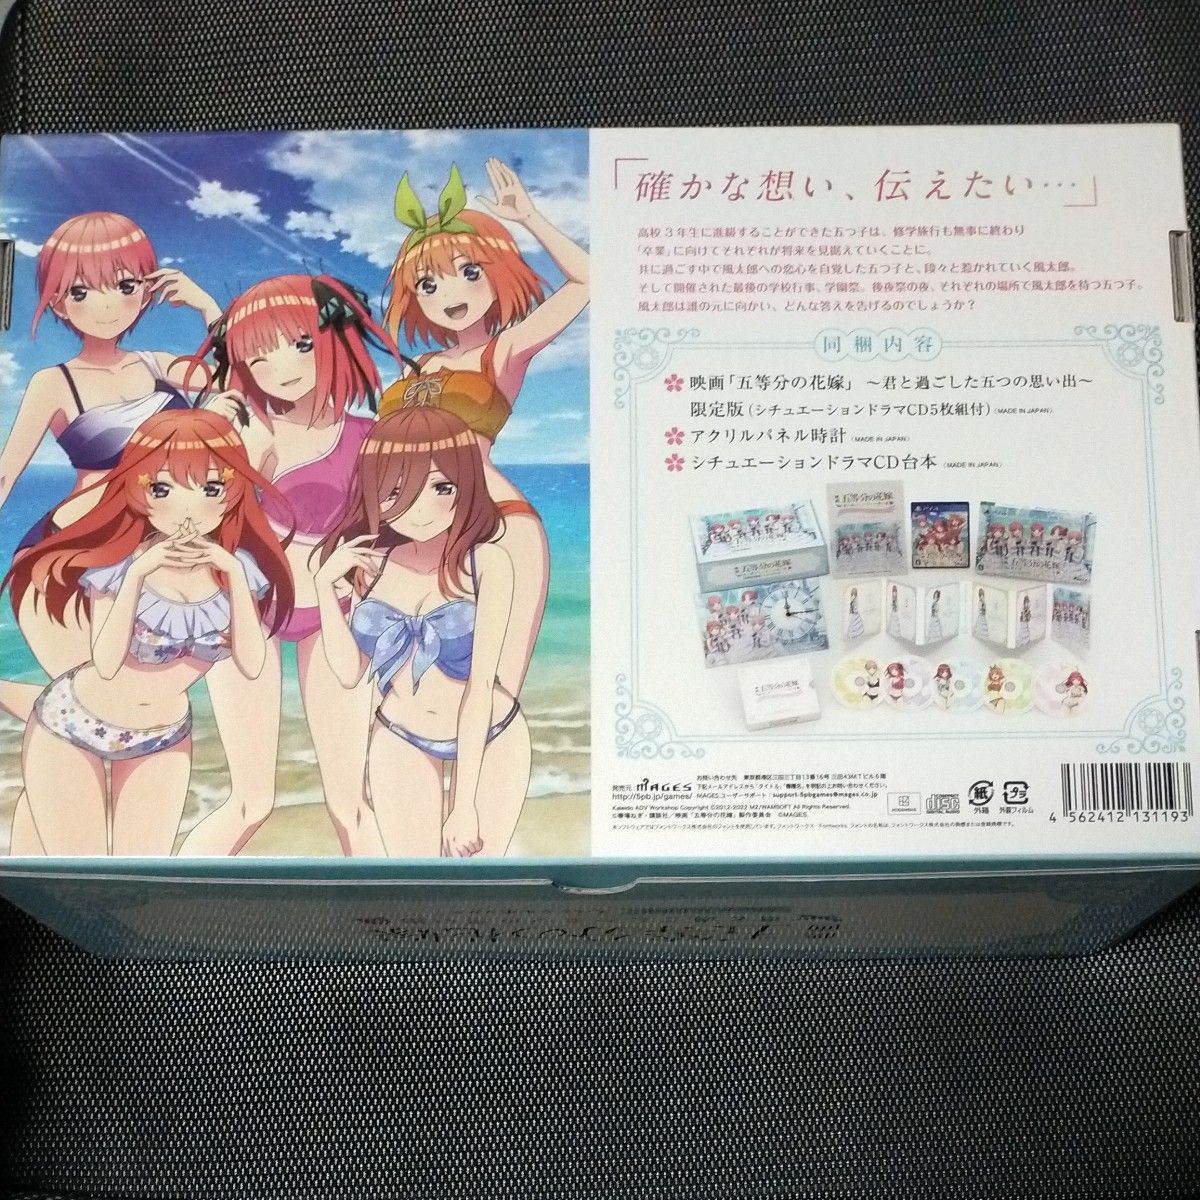 PS4 映画 「五等分の花嫁」 ~君と過ごした五つの思い出~ Amazon.co.jp限定  スペシャルボックス